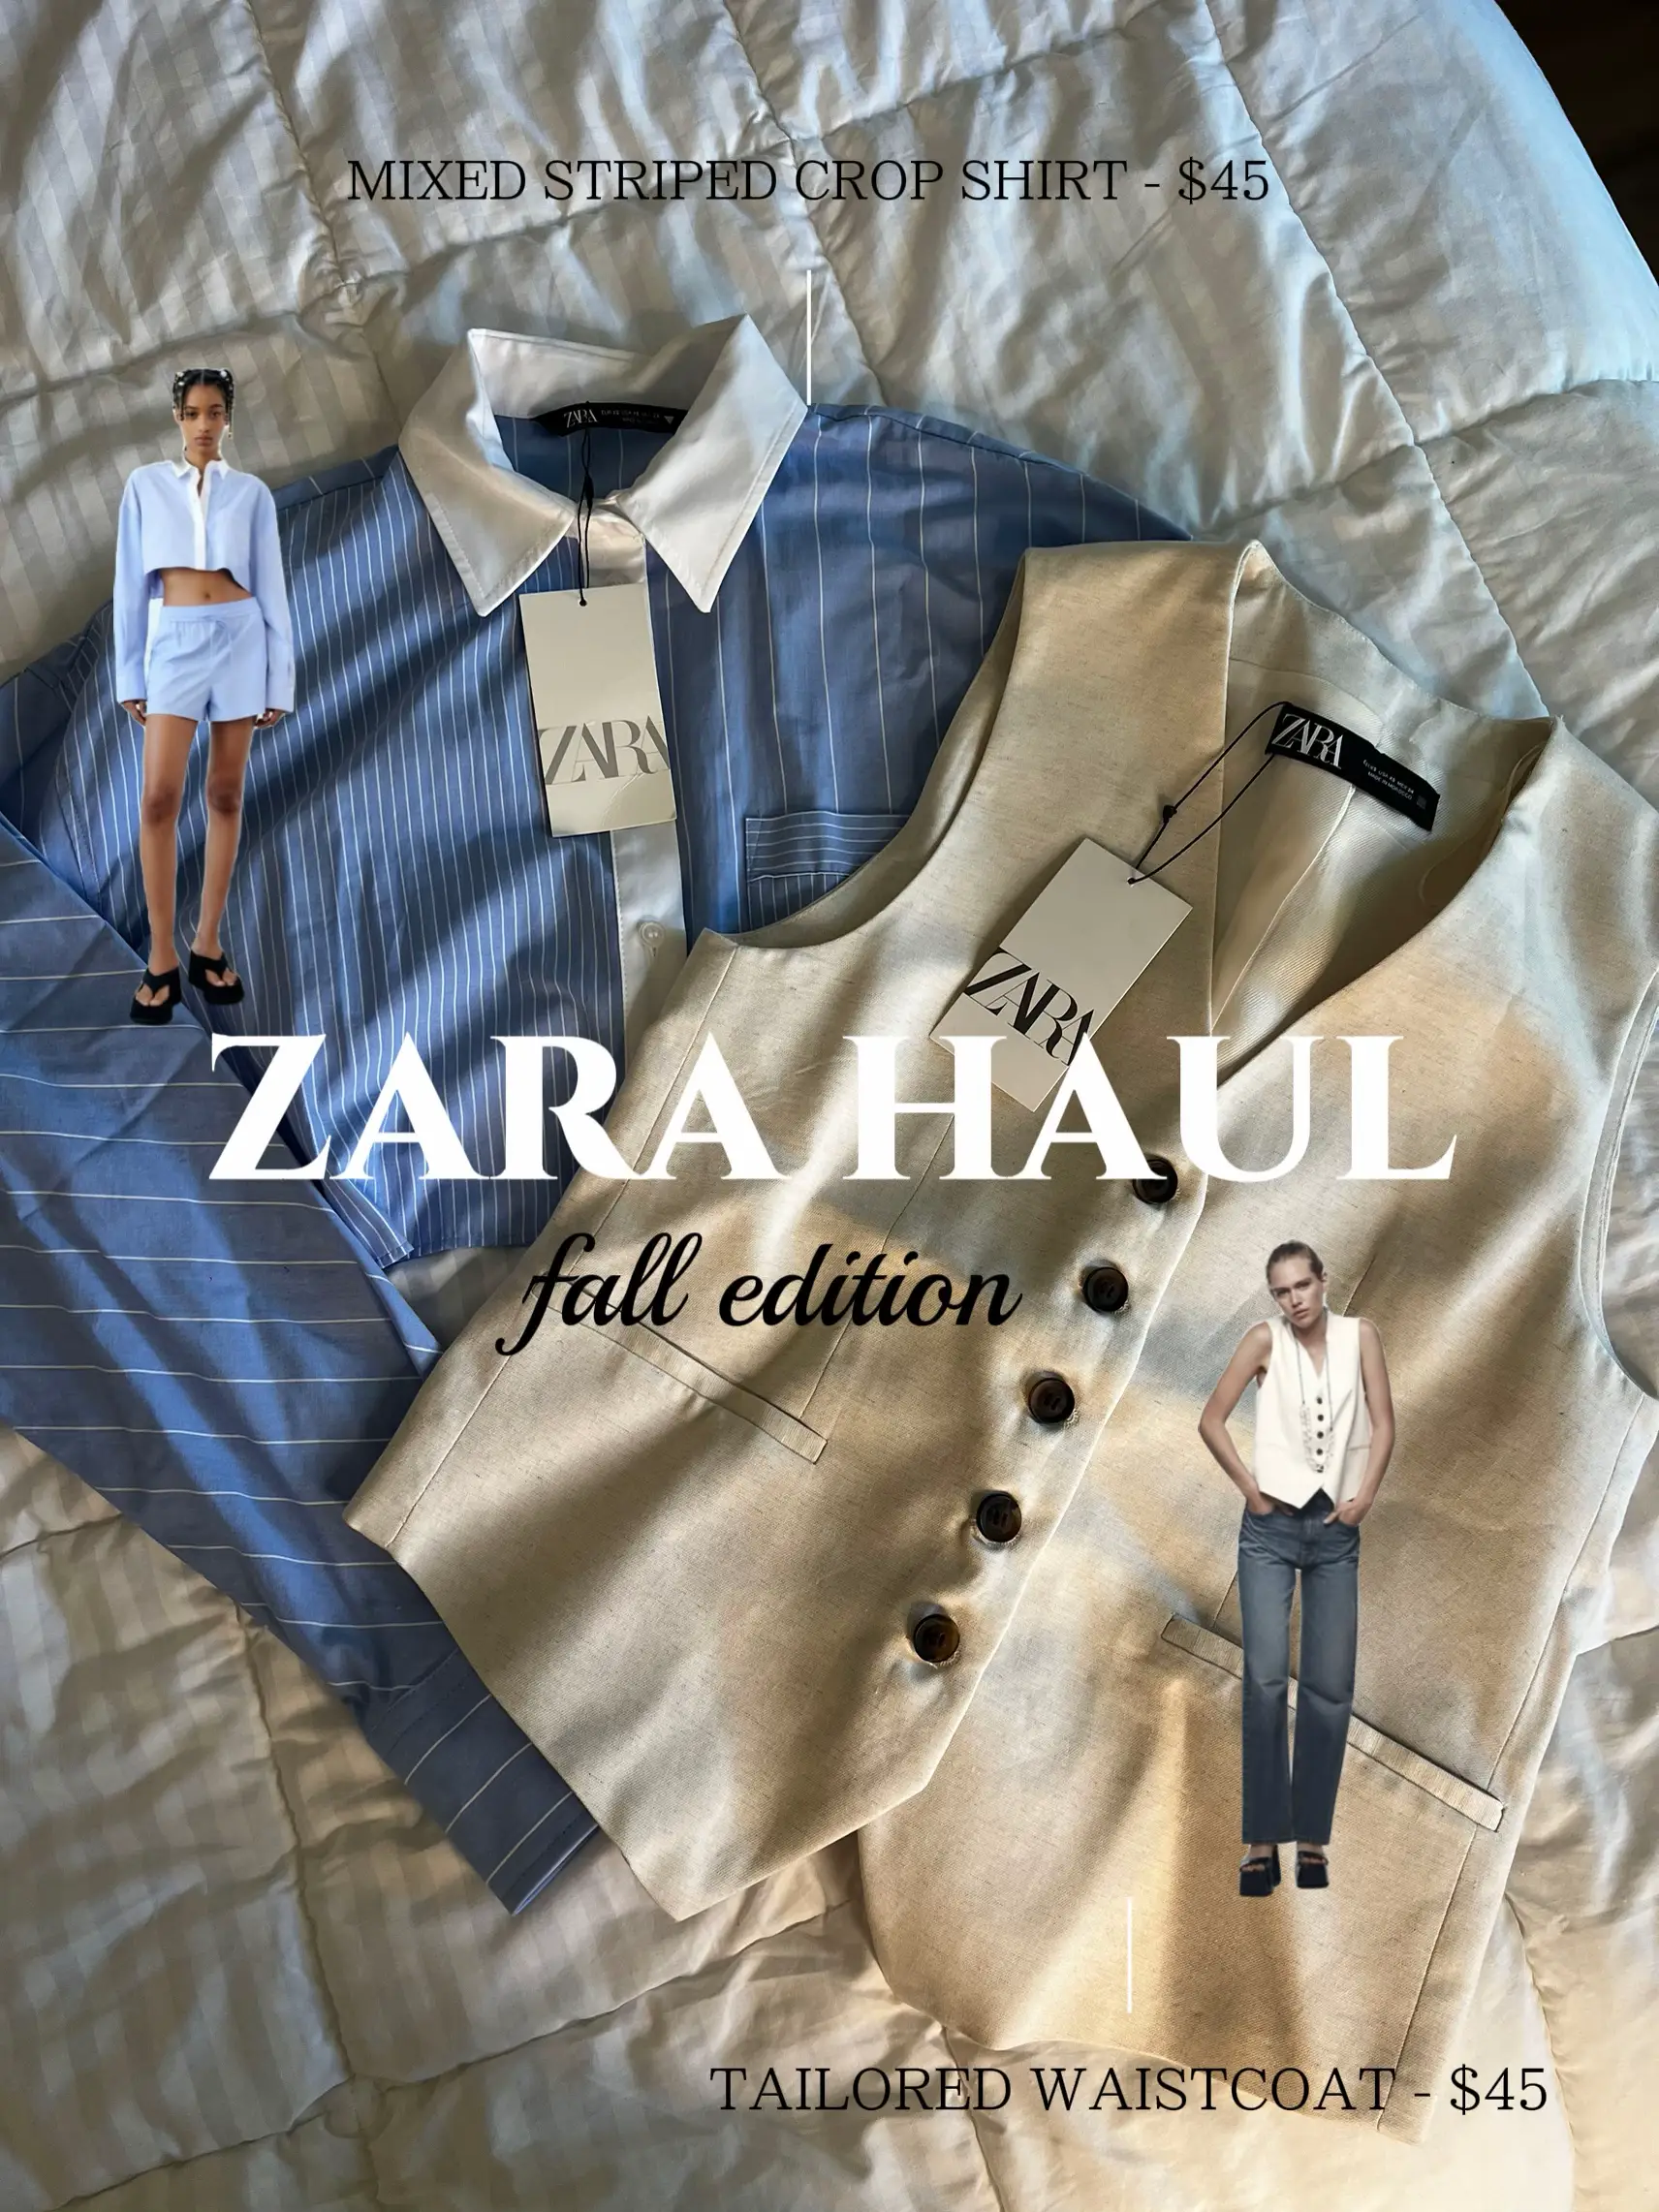 Back to work pants from the @zara sale 👖 #zara #zarahaul